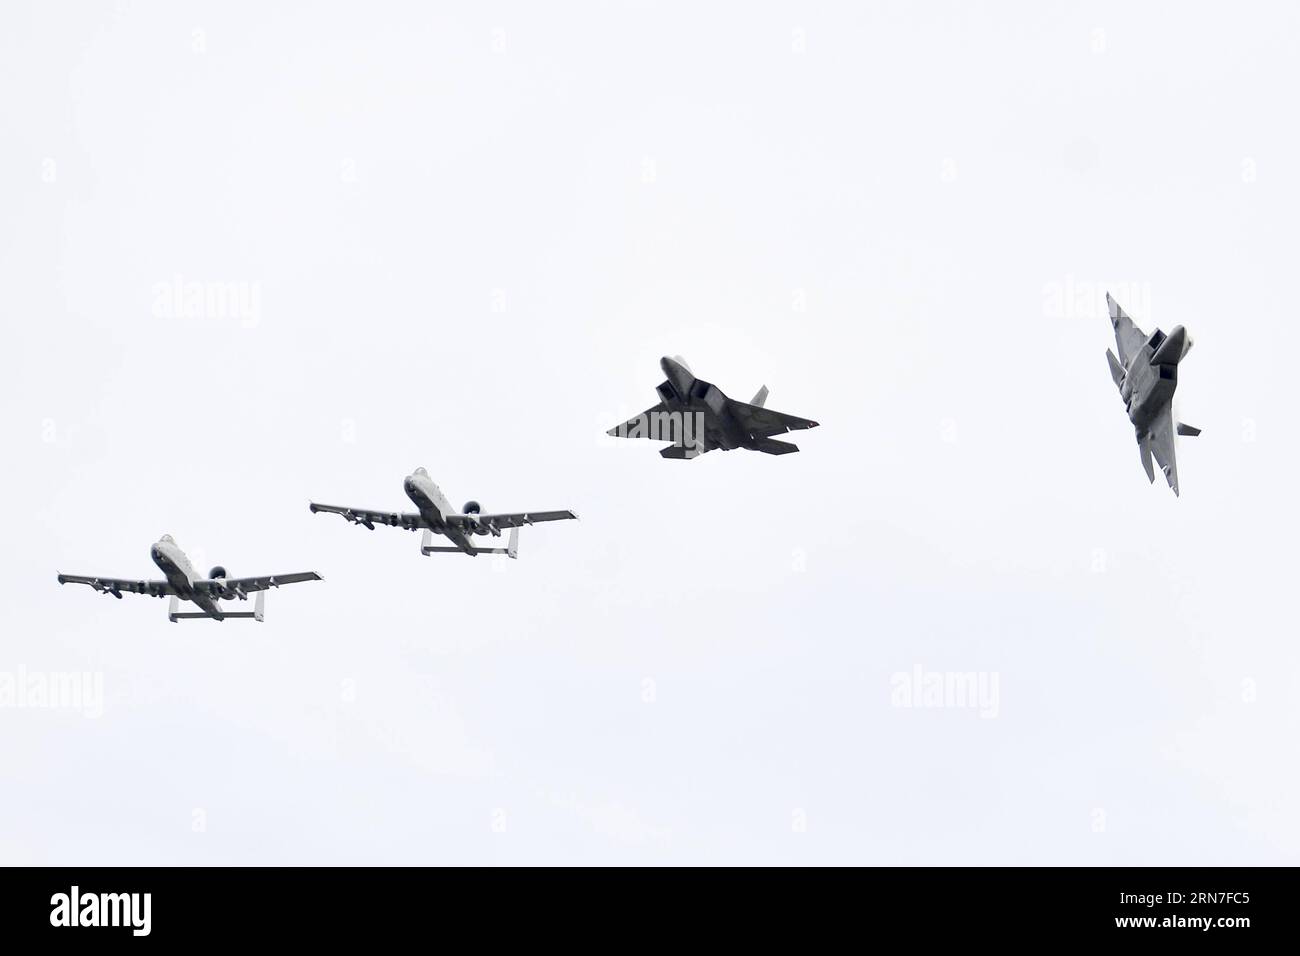 (150904) -- AMARI, 4 septembre 2015 -- des avions A-10 et F-22 de l'US Airforce survolent la base aérienne d'Amari en Estonie le 4 septembre 2015. US Air Forces Europe et Air Forces Africa public Affairs ont effectué des vols d essai à la base aérienne d Amari, en Estonie, ce qui a renforcé les opérations aériennes accrues dans la Baltique et en Europe, ainsi que la capacité de l Estonie à soutenir les déploiements rotatifs d avions de l US Air Force.) ESTONIE-AMARI-TRAIL VOL SergeixStepanov PUBLICATIONxNOTxINxCHN 150904 Amari sept 4 2015 a 10 et F 22 avions de l'US Airforce survolent la base aérienne d'Amari en Estonie LE 4 2015 septembre U S Air Force Banque D'Images